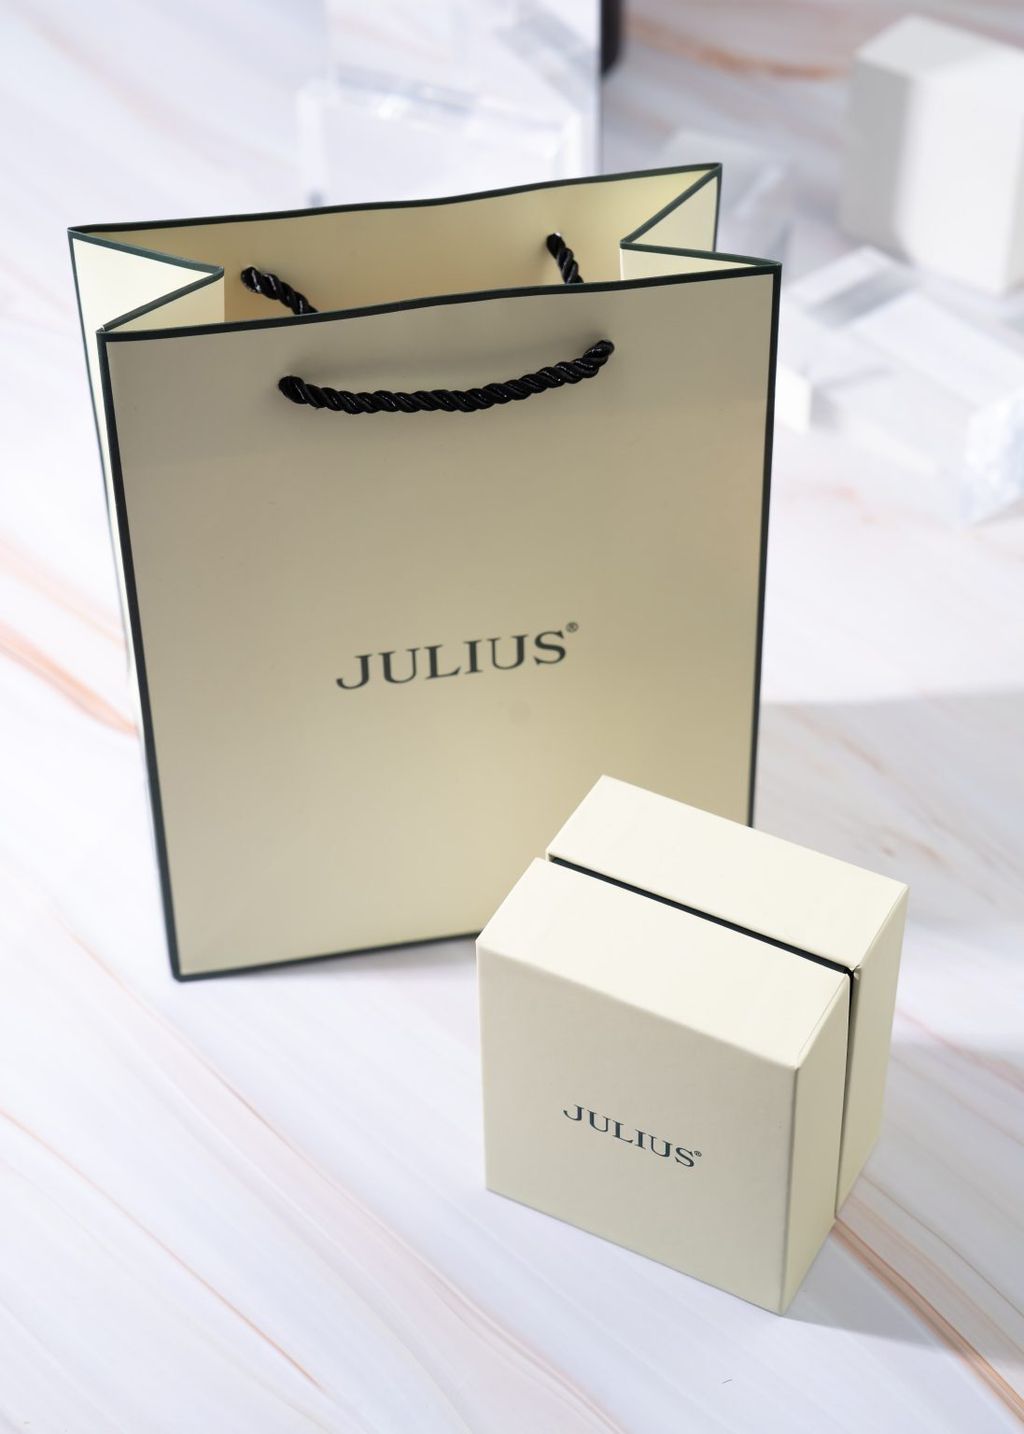 BOX-JULIUS-2-min-1097x1536